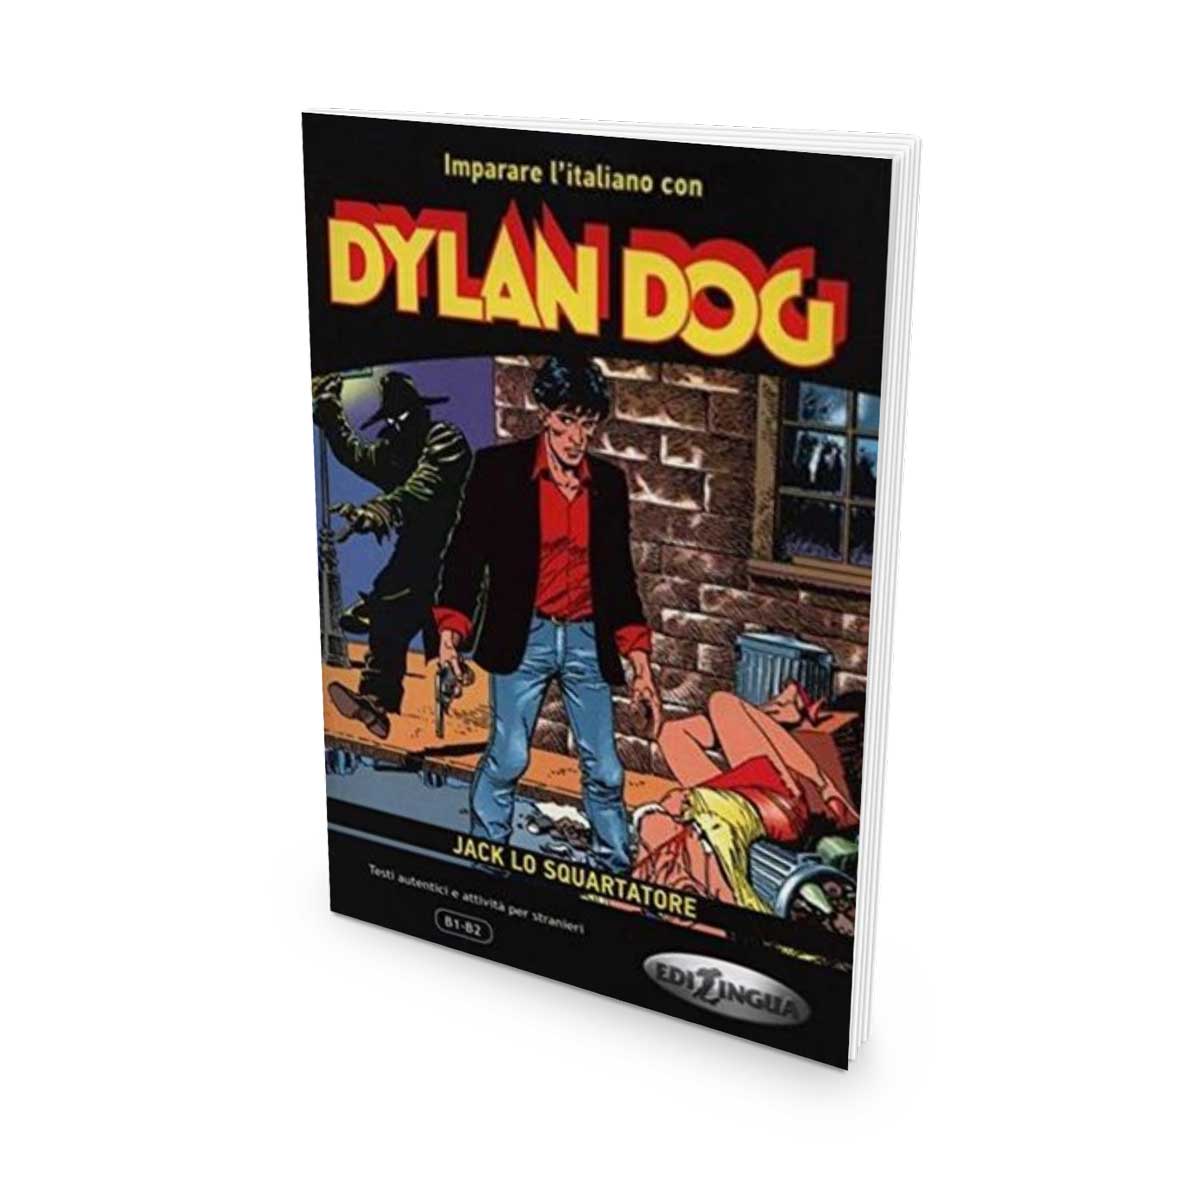 Imparare l'italiano con i fumetti: Dylan Dog – Jack lo squartatore